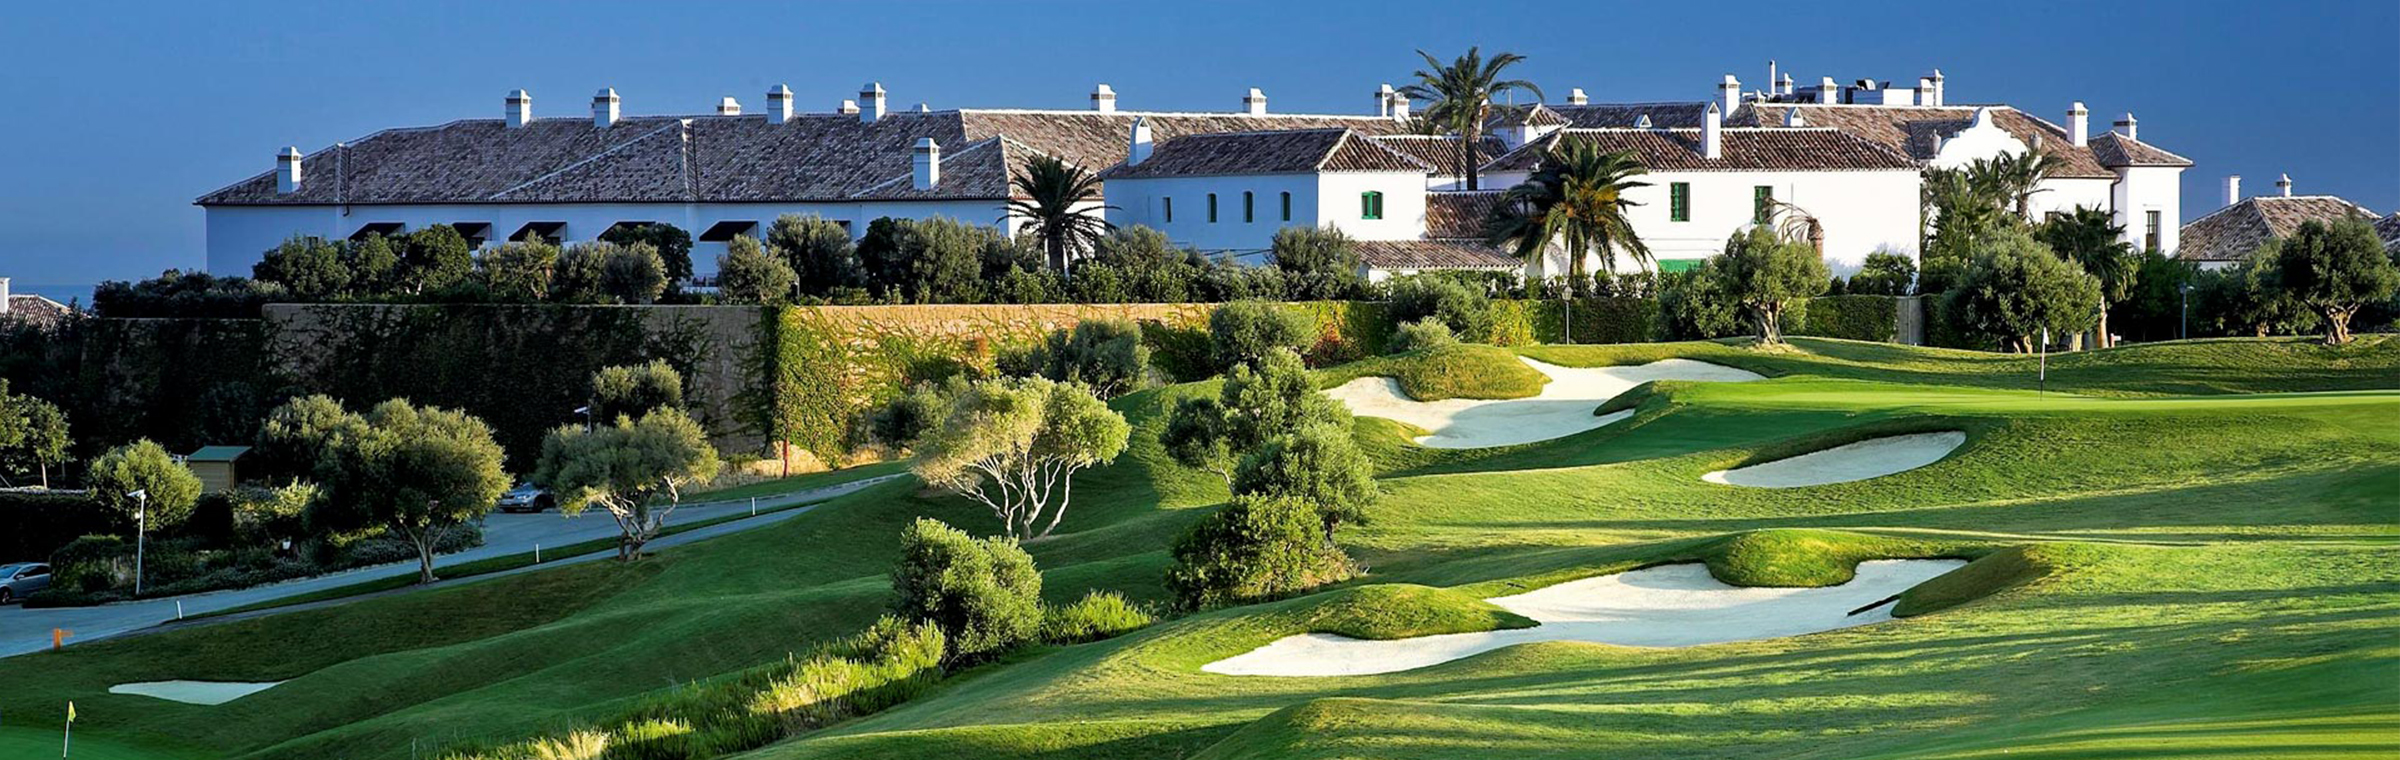 Finca Cortesín Hotel, Golf & Spa